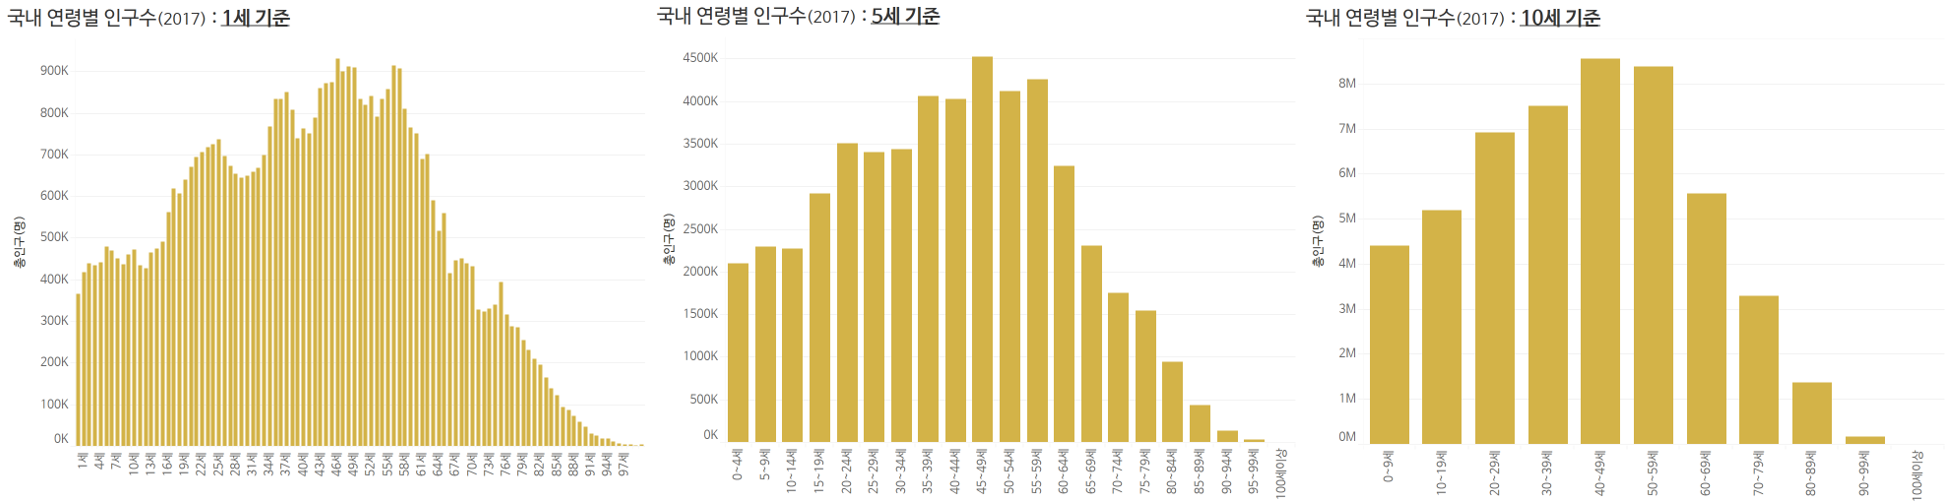 2017년 국내 인구수 : 연령별 분포(1세, 5세, 10세 기준별)